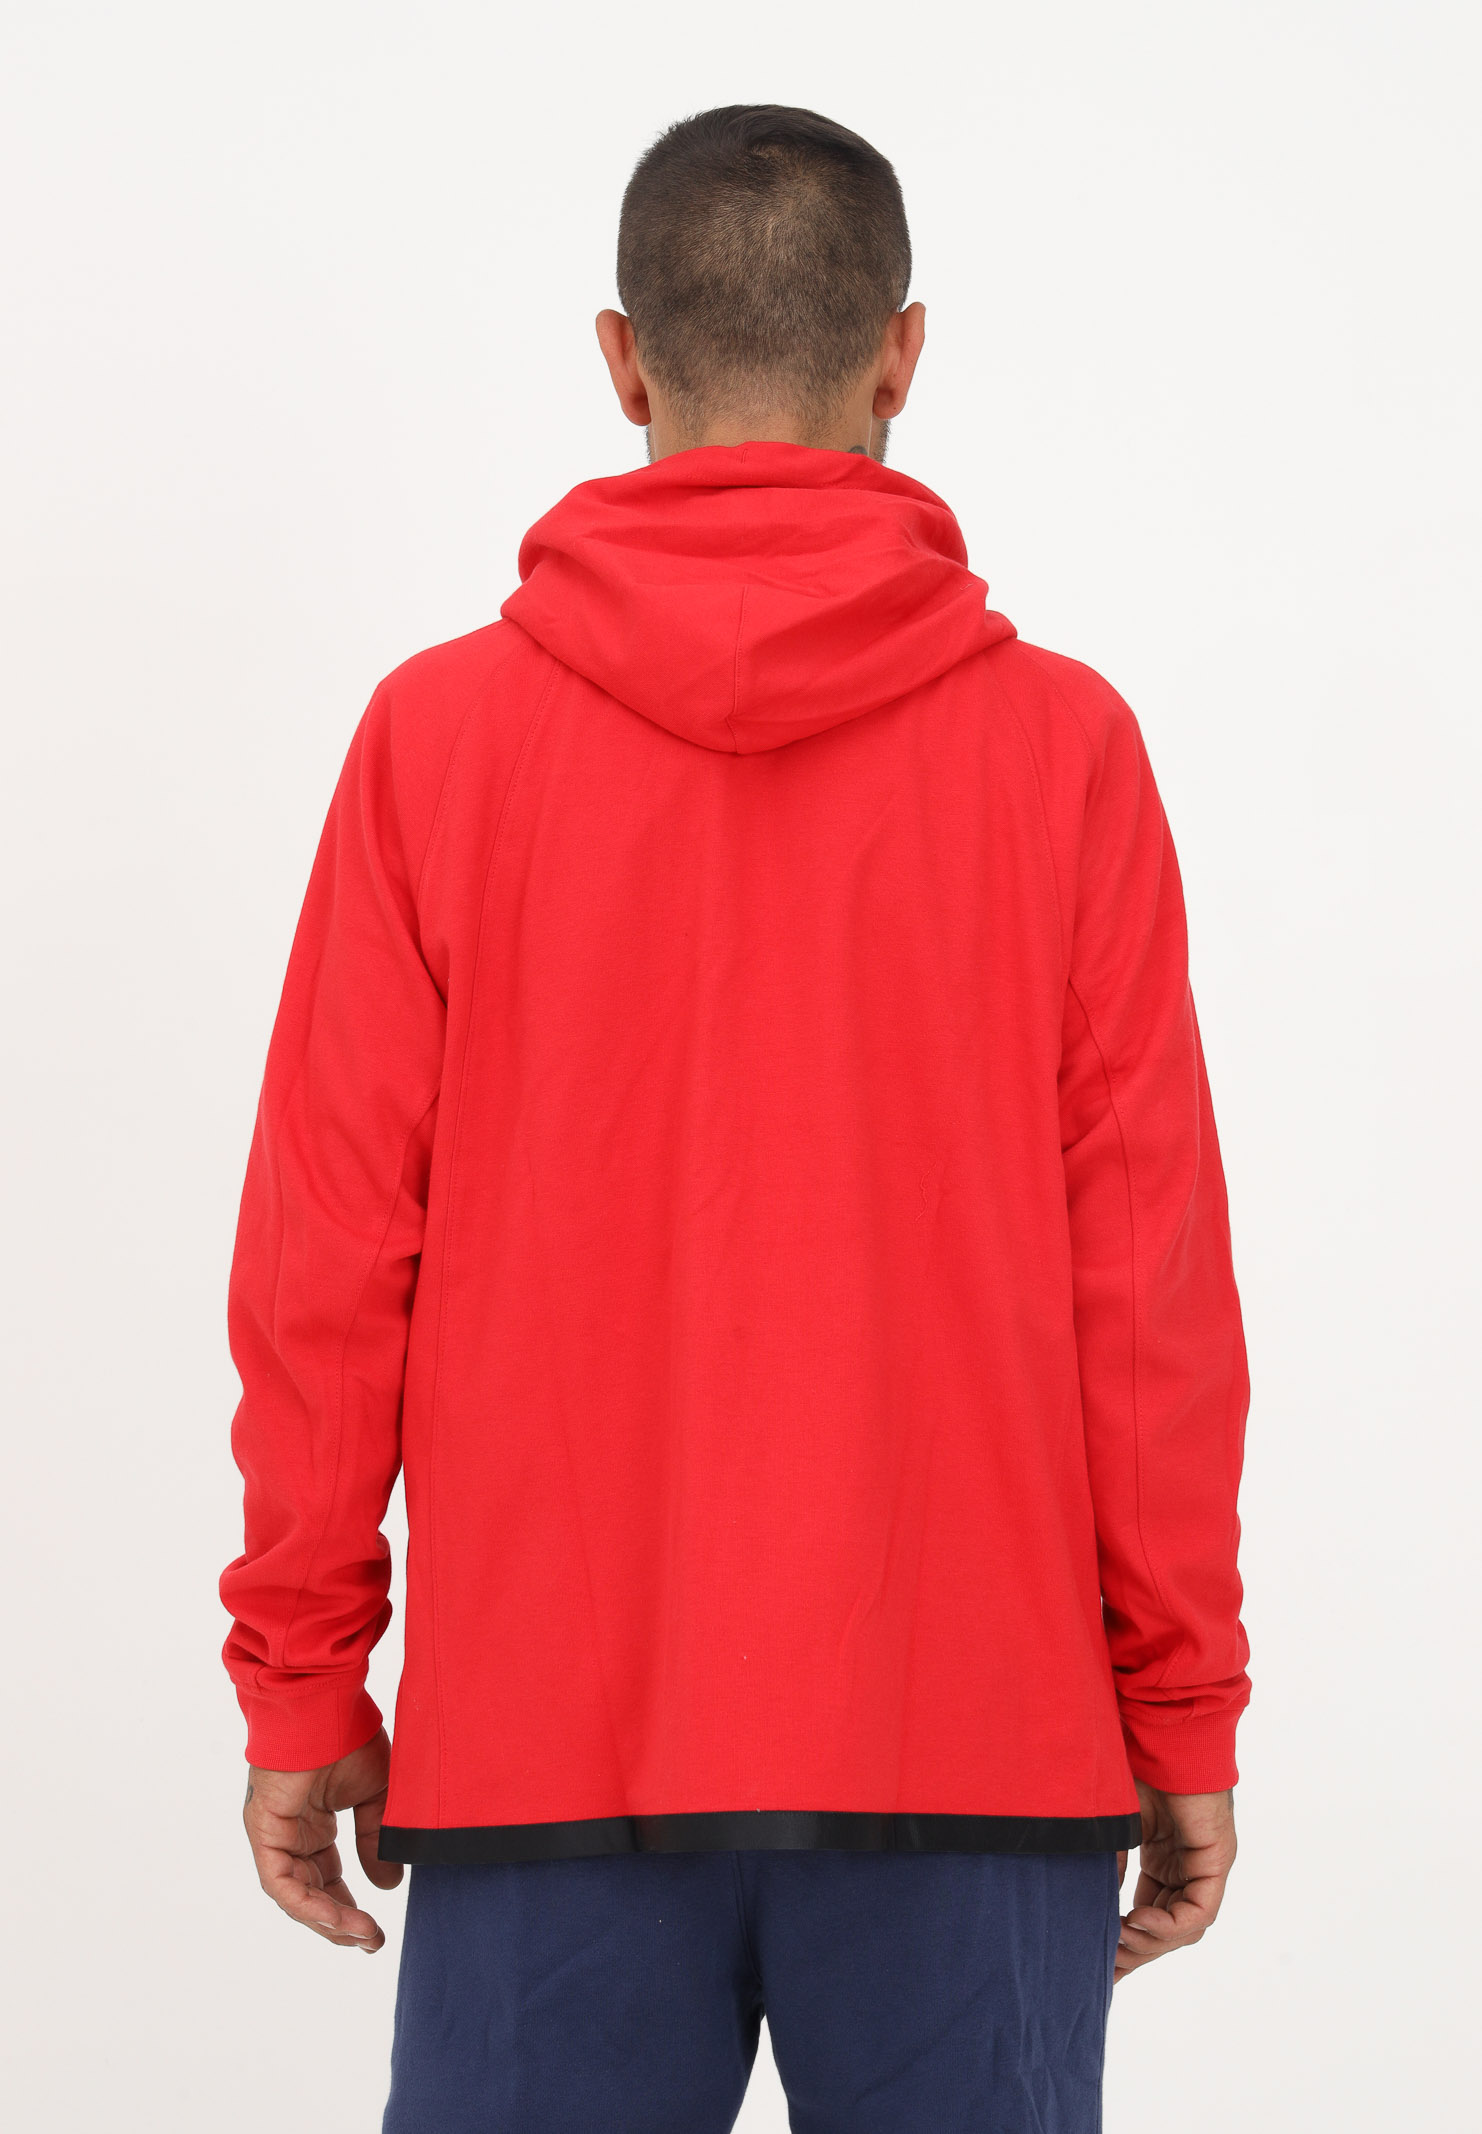 Jordan Essentials zip-up sweatshirt in red for men and women NIKE | DJ0886612